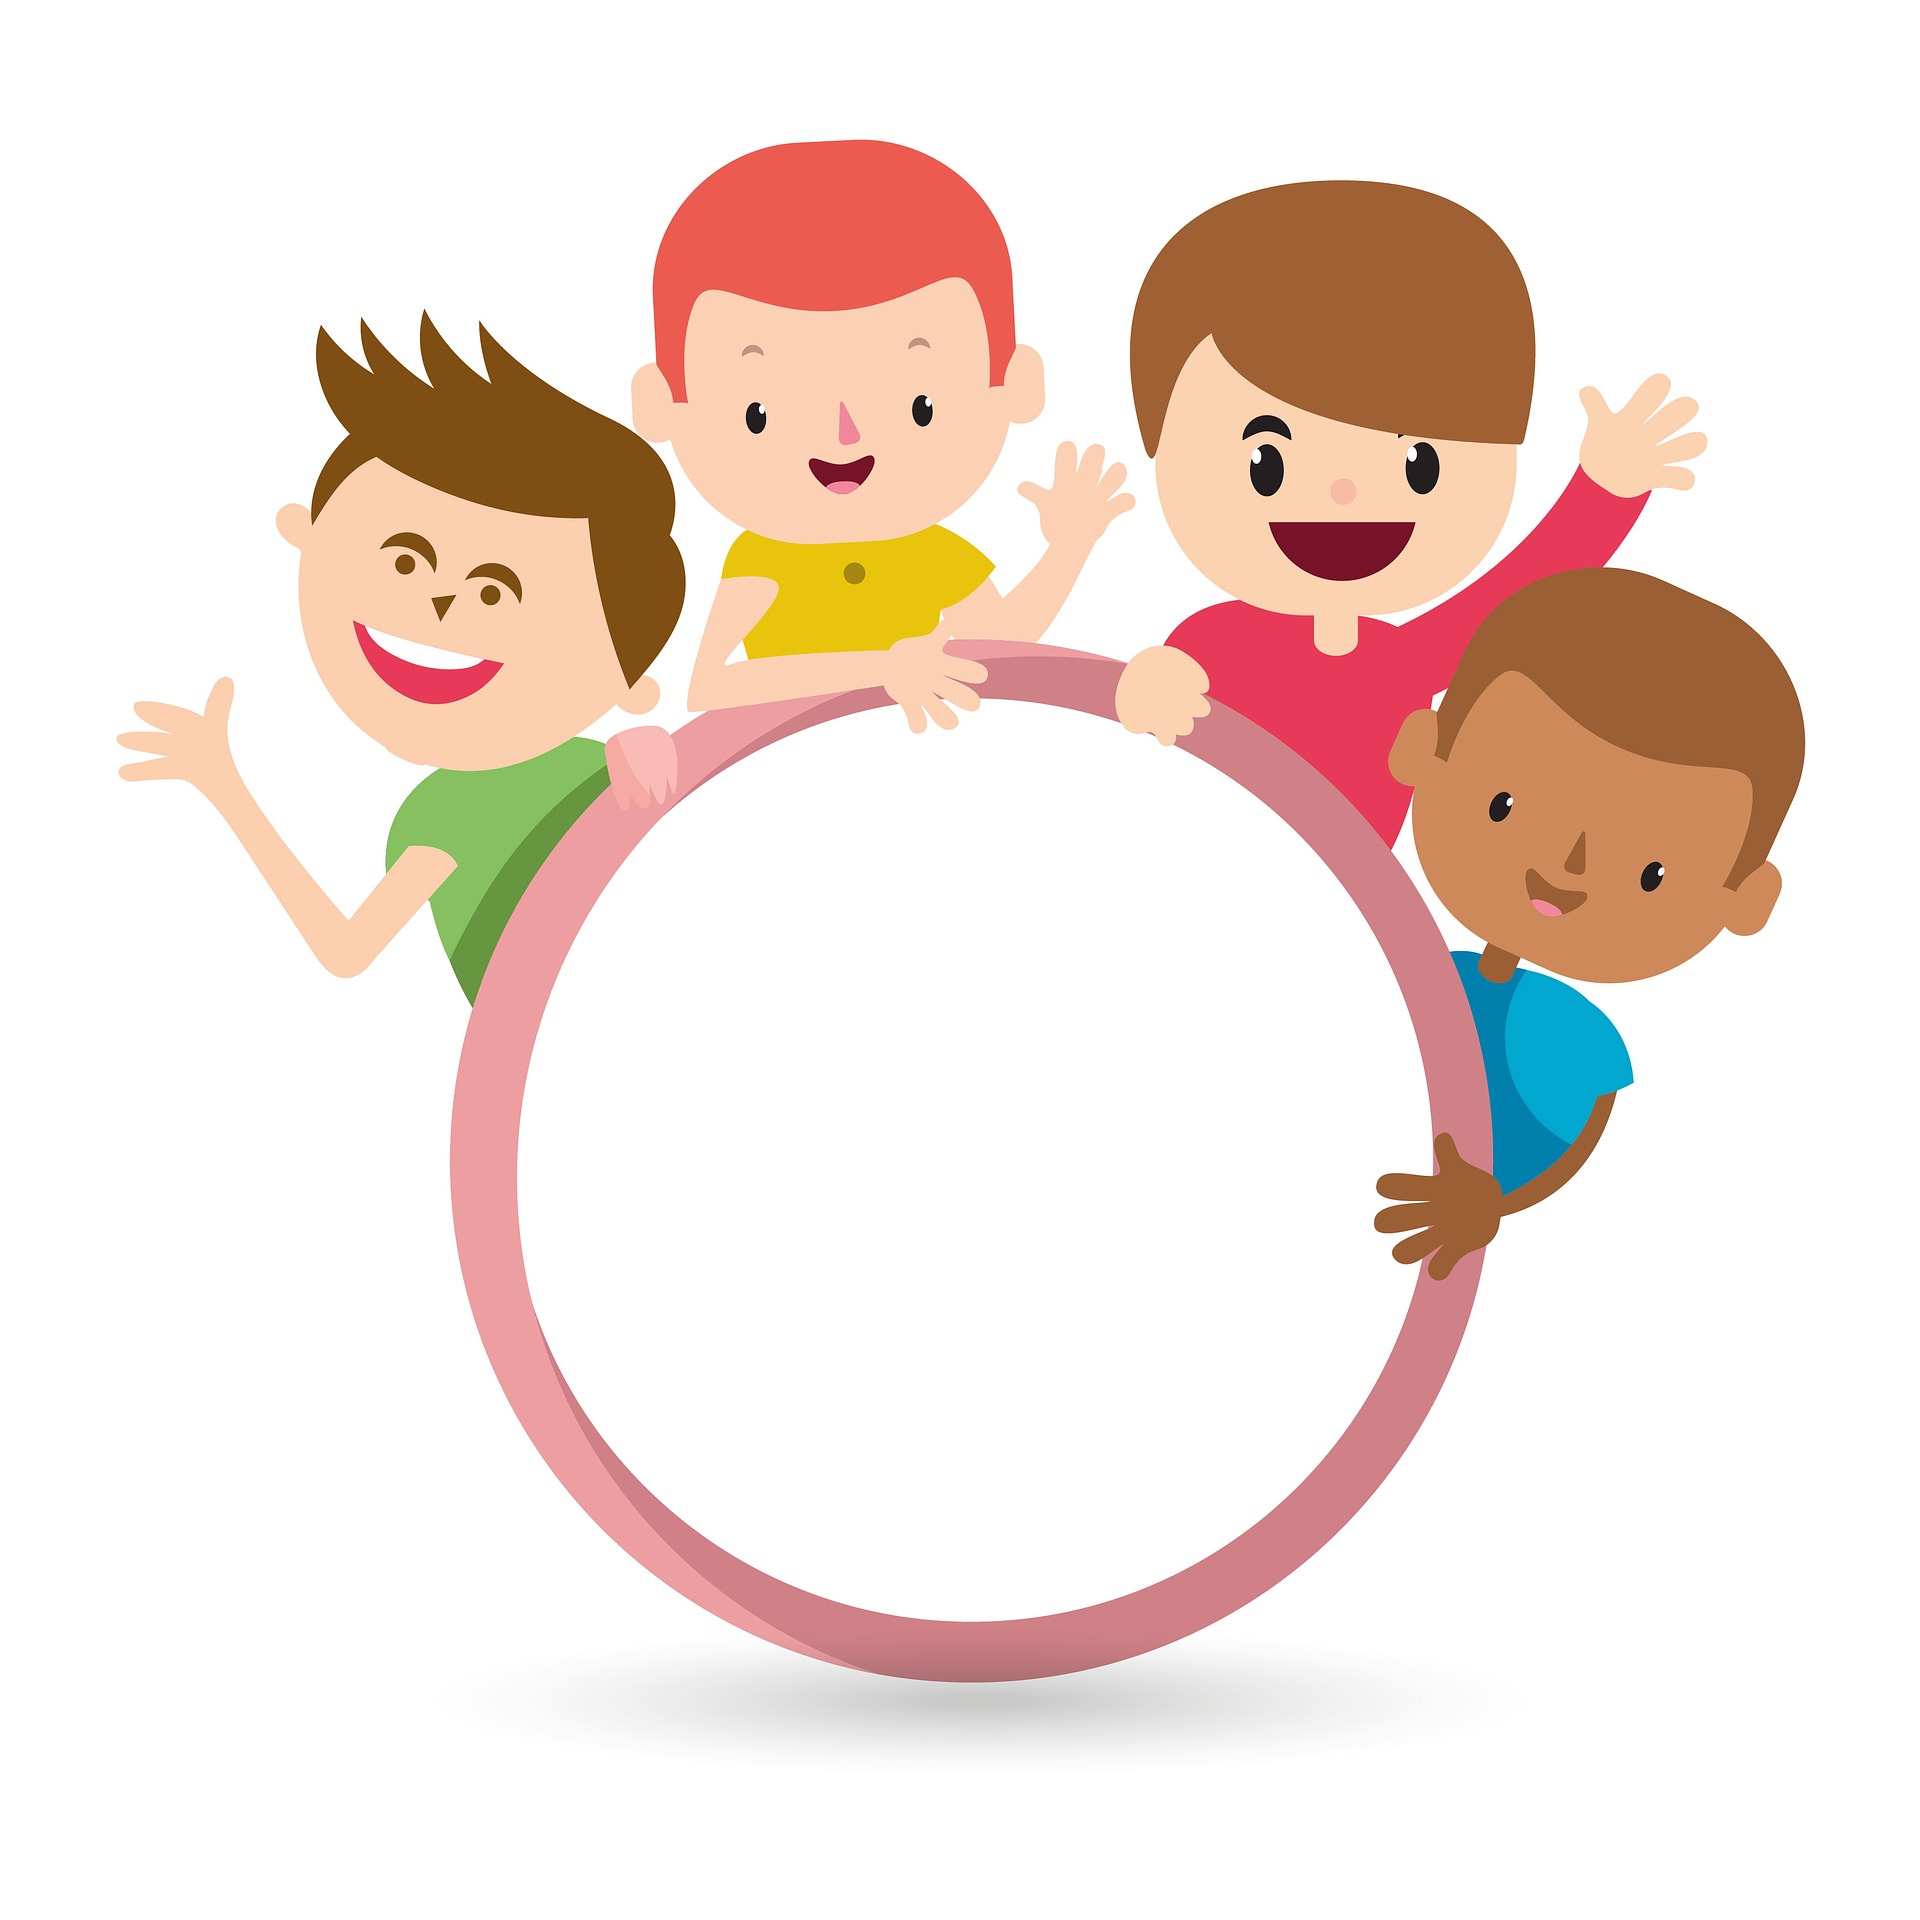 La imagen muestra un anillo, y en el exterior del mismo, varios niños asomándose